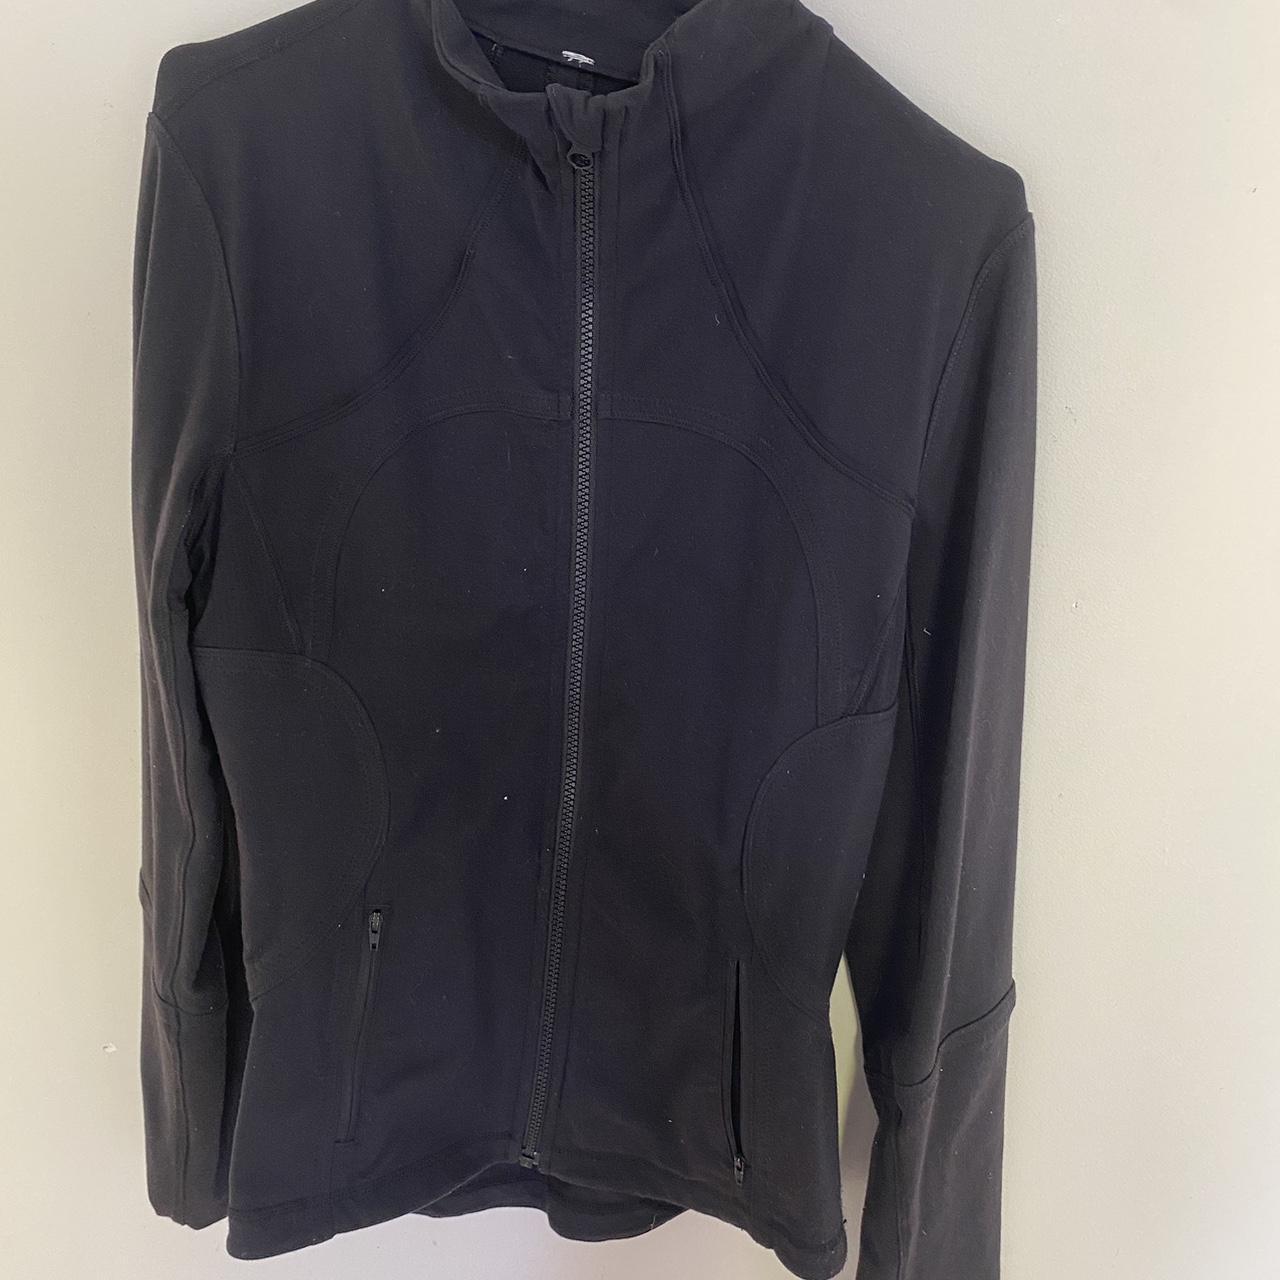 authentic lululemon jacket mint condition except tag... - Depop